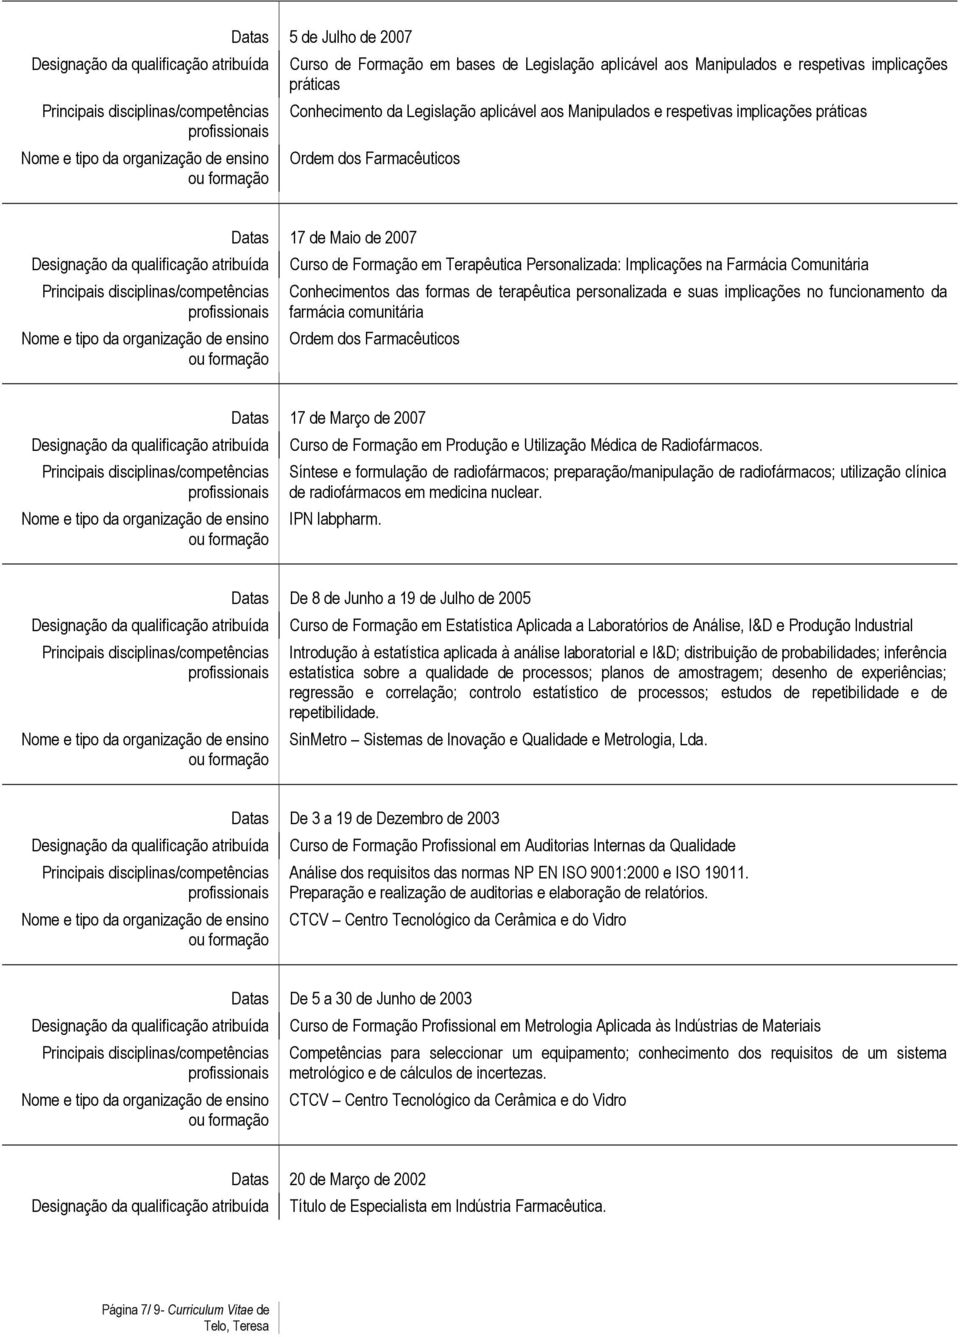 personalizada e suas implicações no funcionamento da farmácia comunitária Ordem dos Farmacêuticos Datas 17 de Março de 2007 Curso de Formação em Produção e Utilização Médica de Radiofármacos.